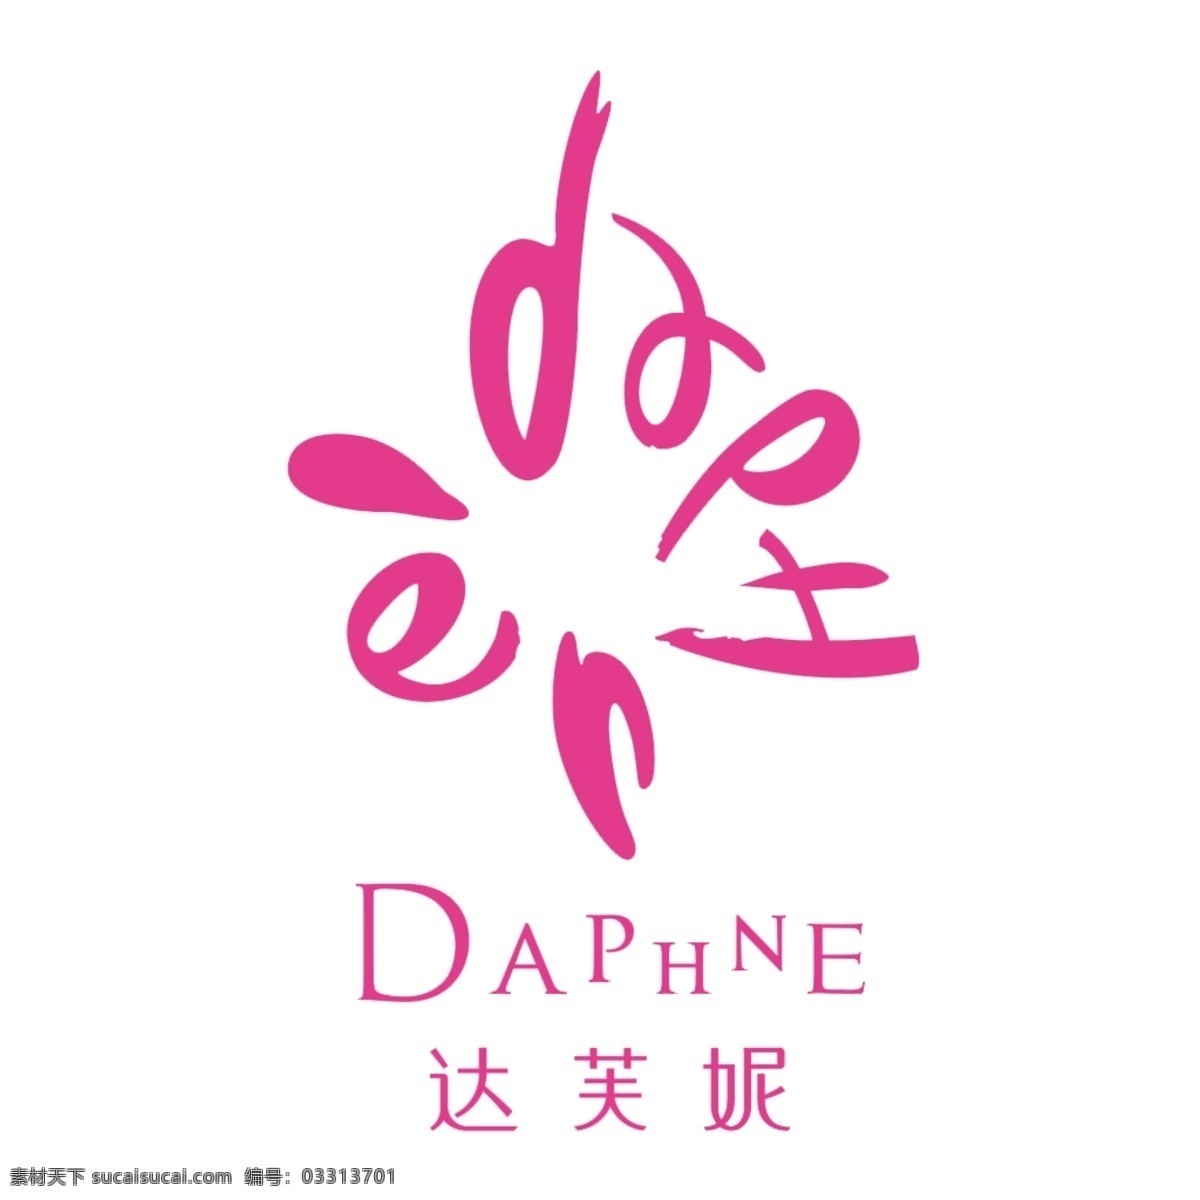 达芙妮 logo 鞋子 daphne 牌子 标志设计 广告设计模板 源文件